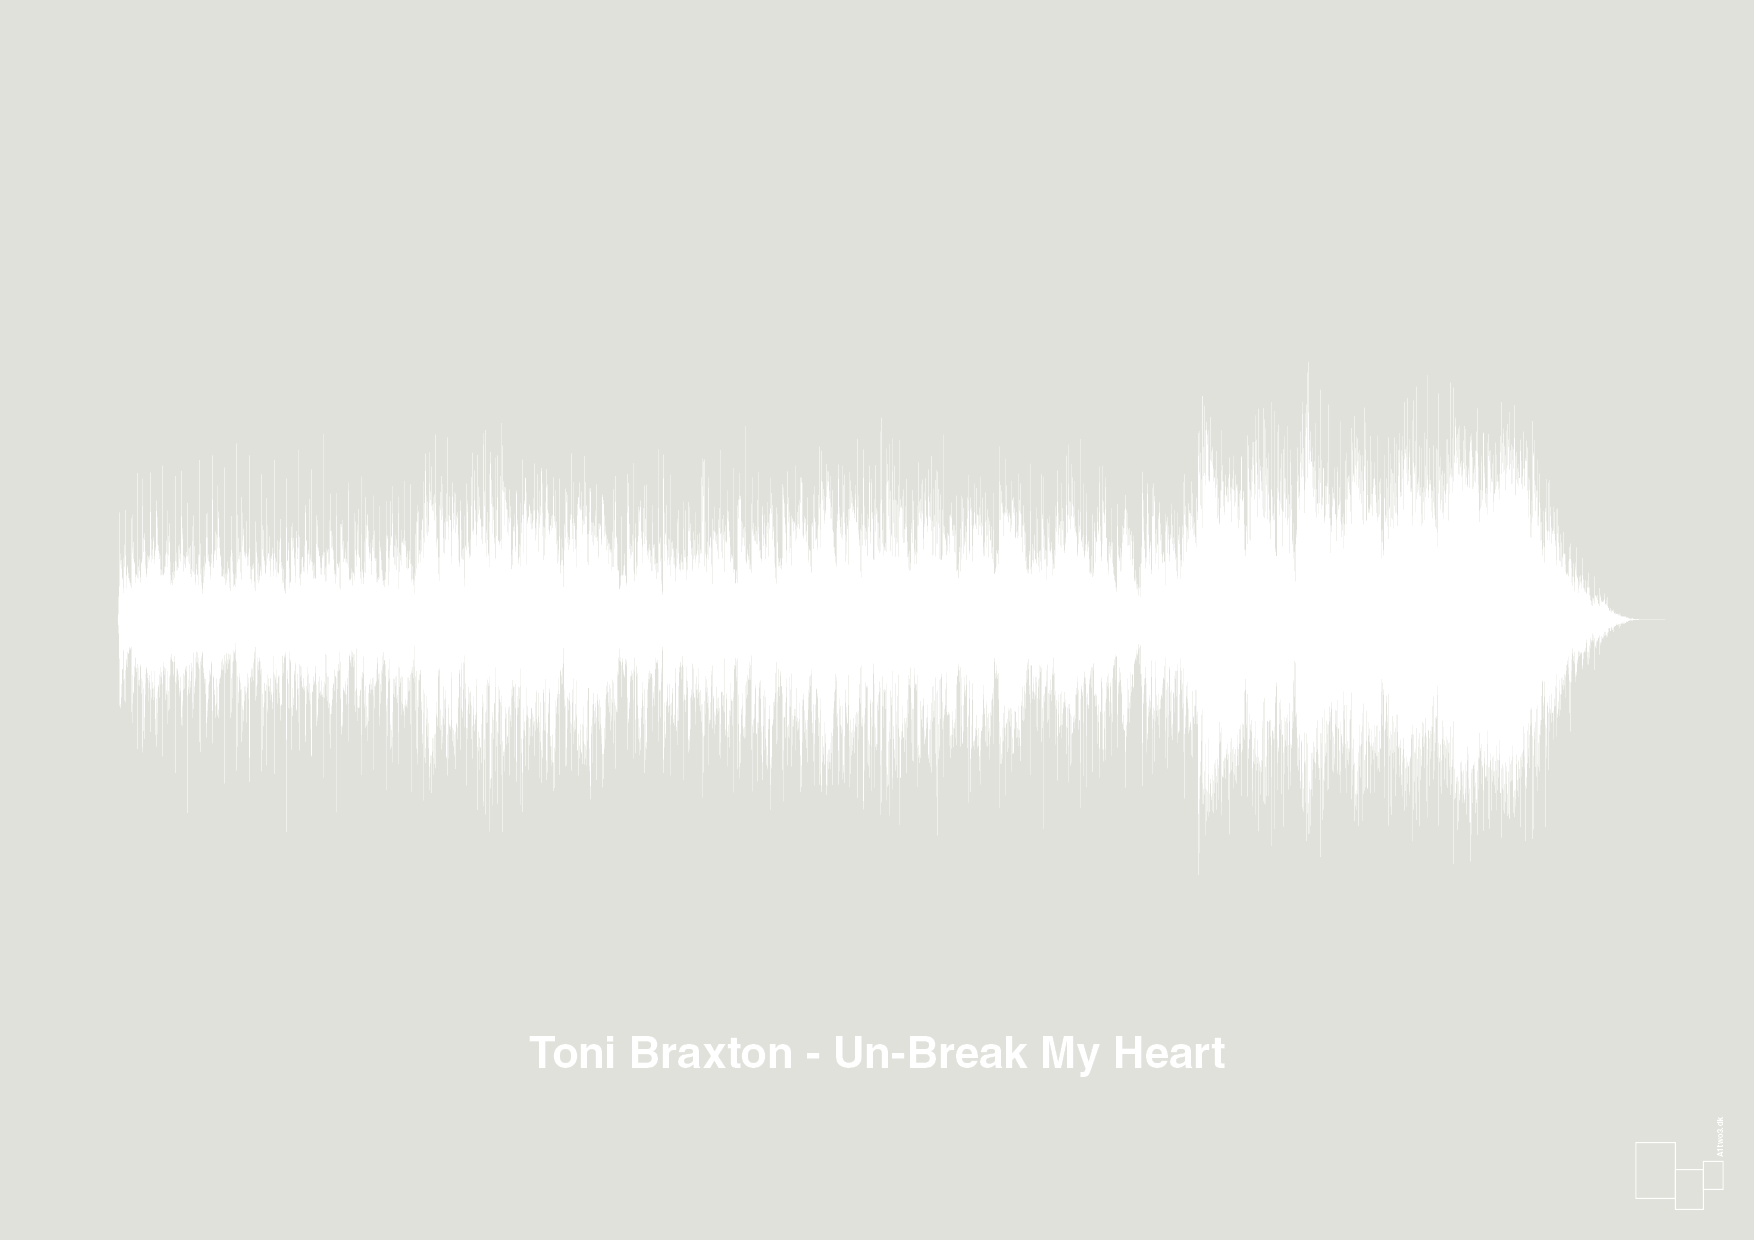 toni braxton - un-break my heart - Plakat med Musik i Painters White